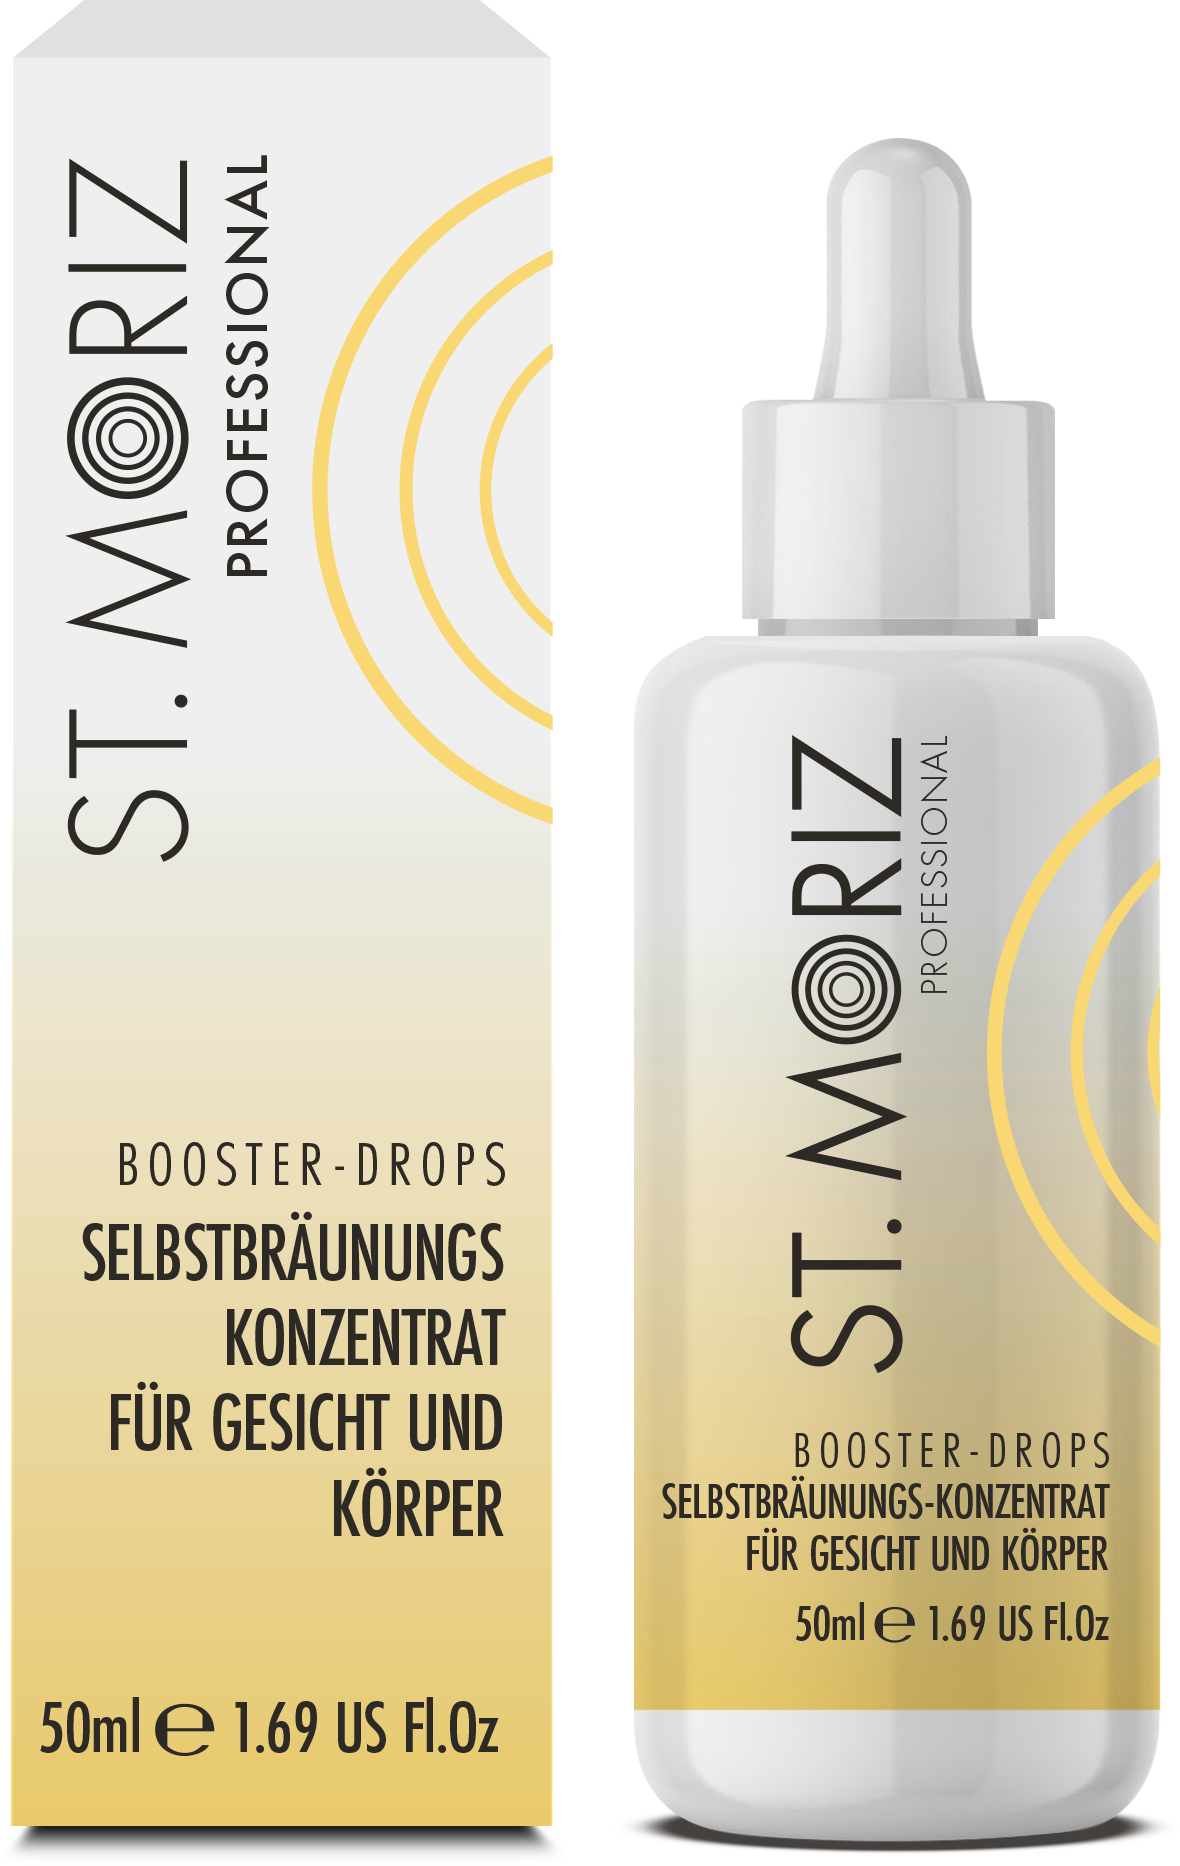 St. Moriz Professional – Booster Drops – Selbstbräunungskonzentrat für Gesicht und Körper 50ml